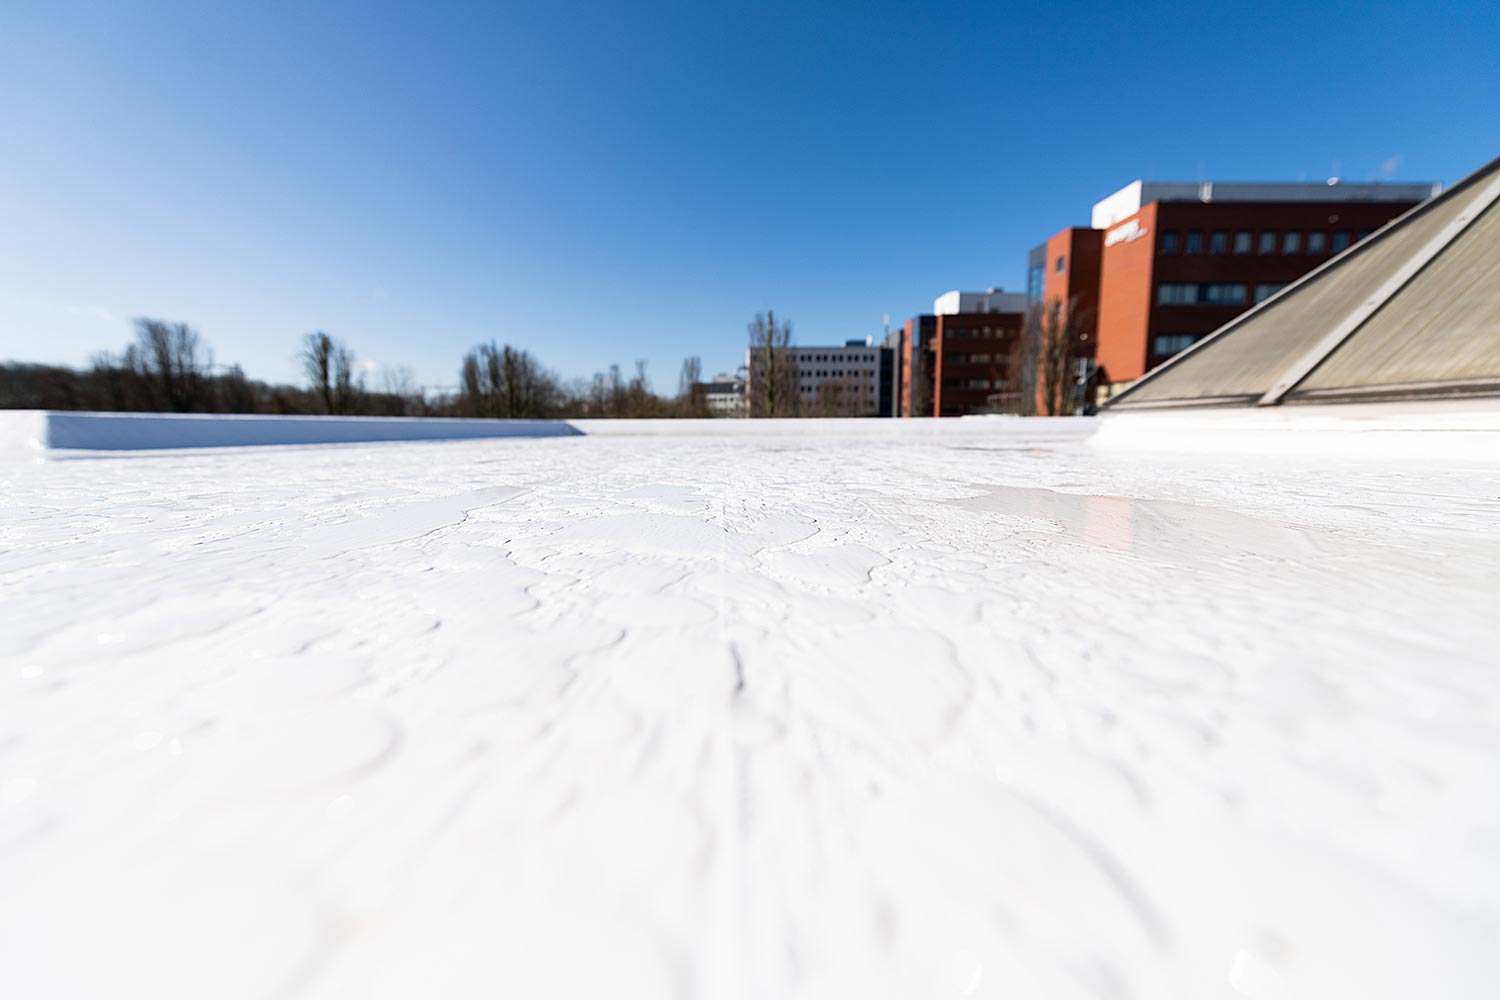 Hittereflecterend en waterdicht dak dankzij renovatie met Enduris Vloeibare dakbedekking - Den Bosch